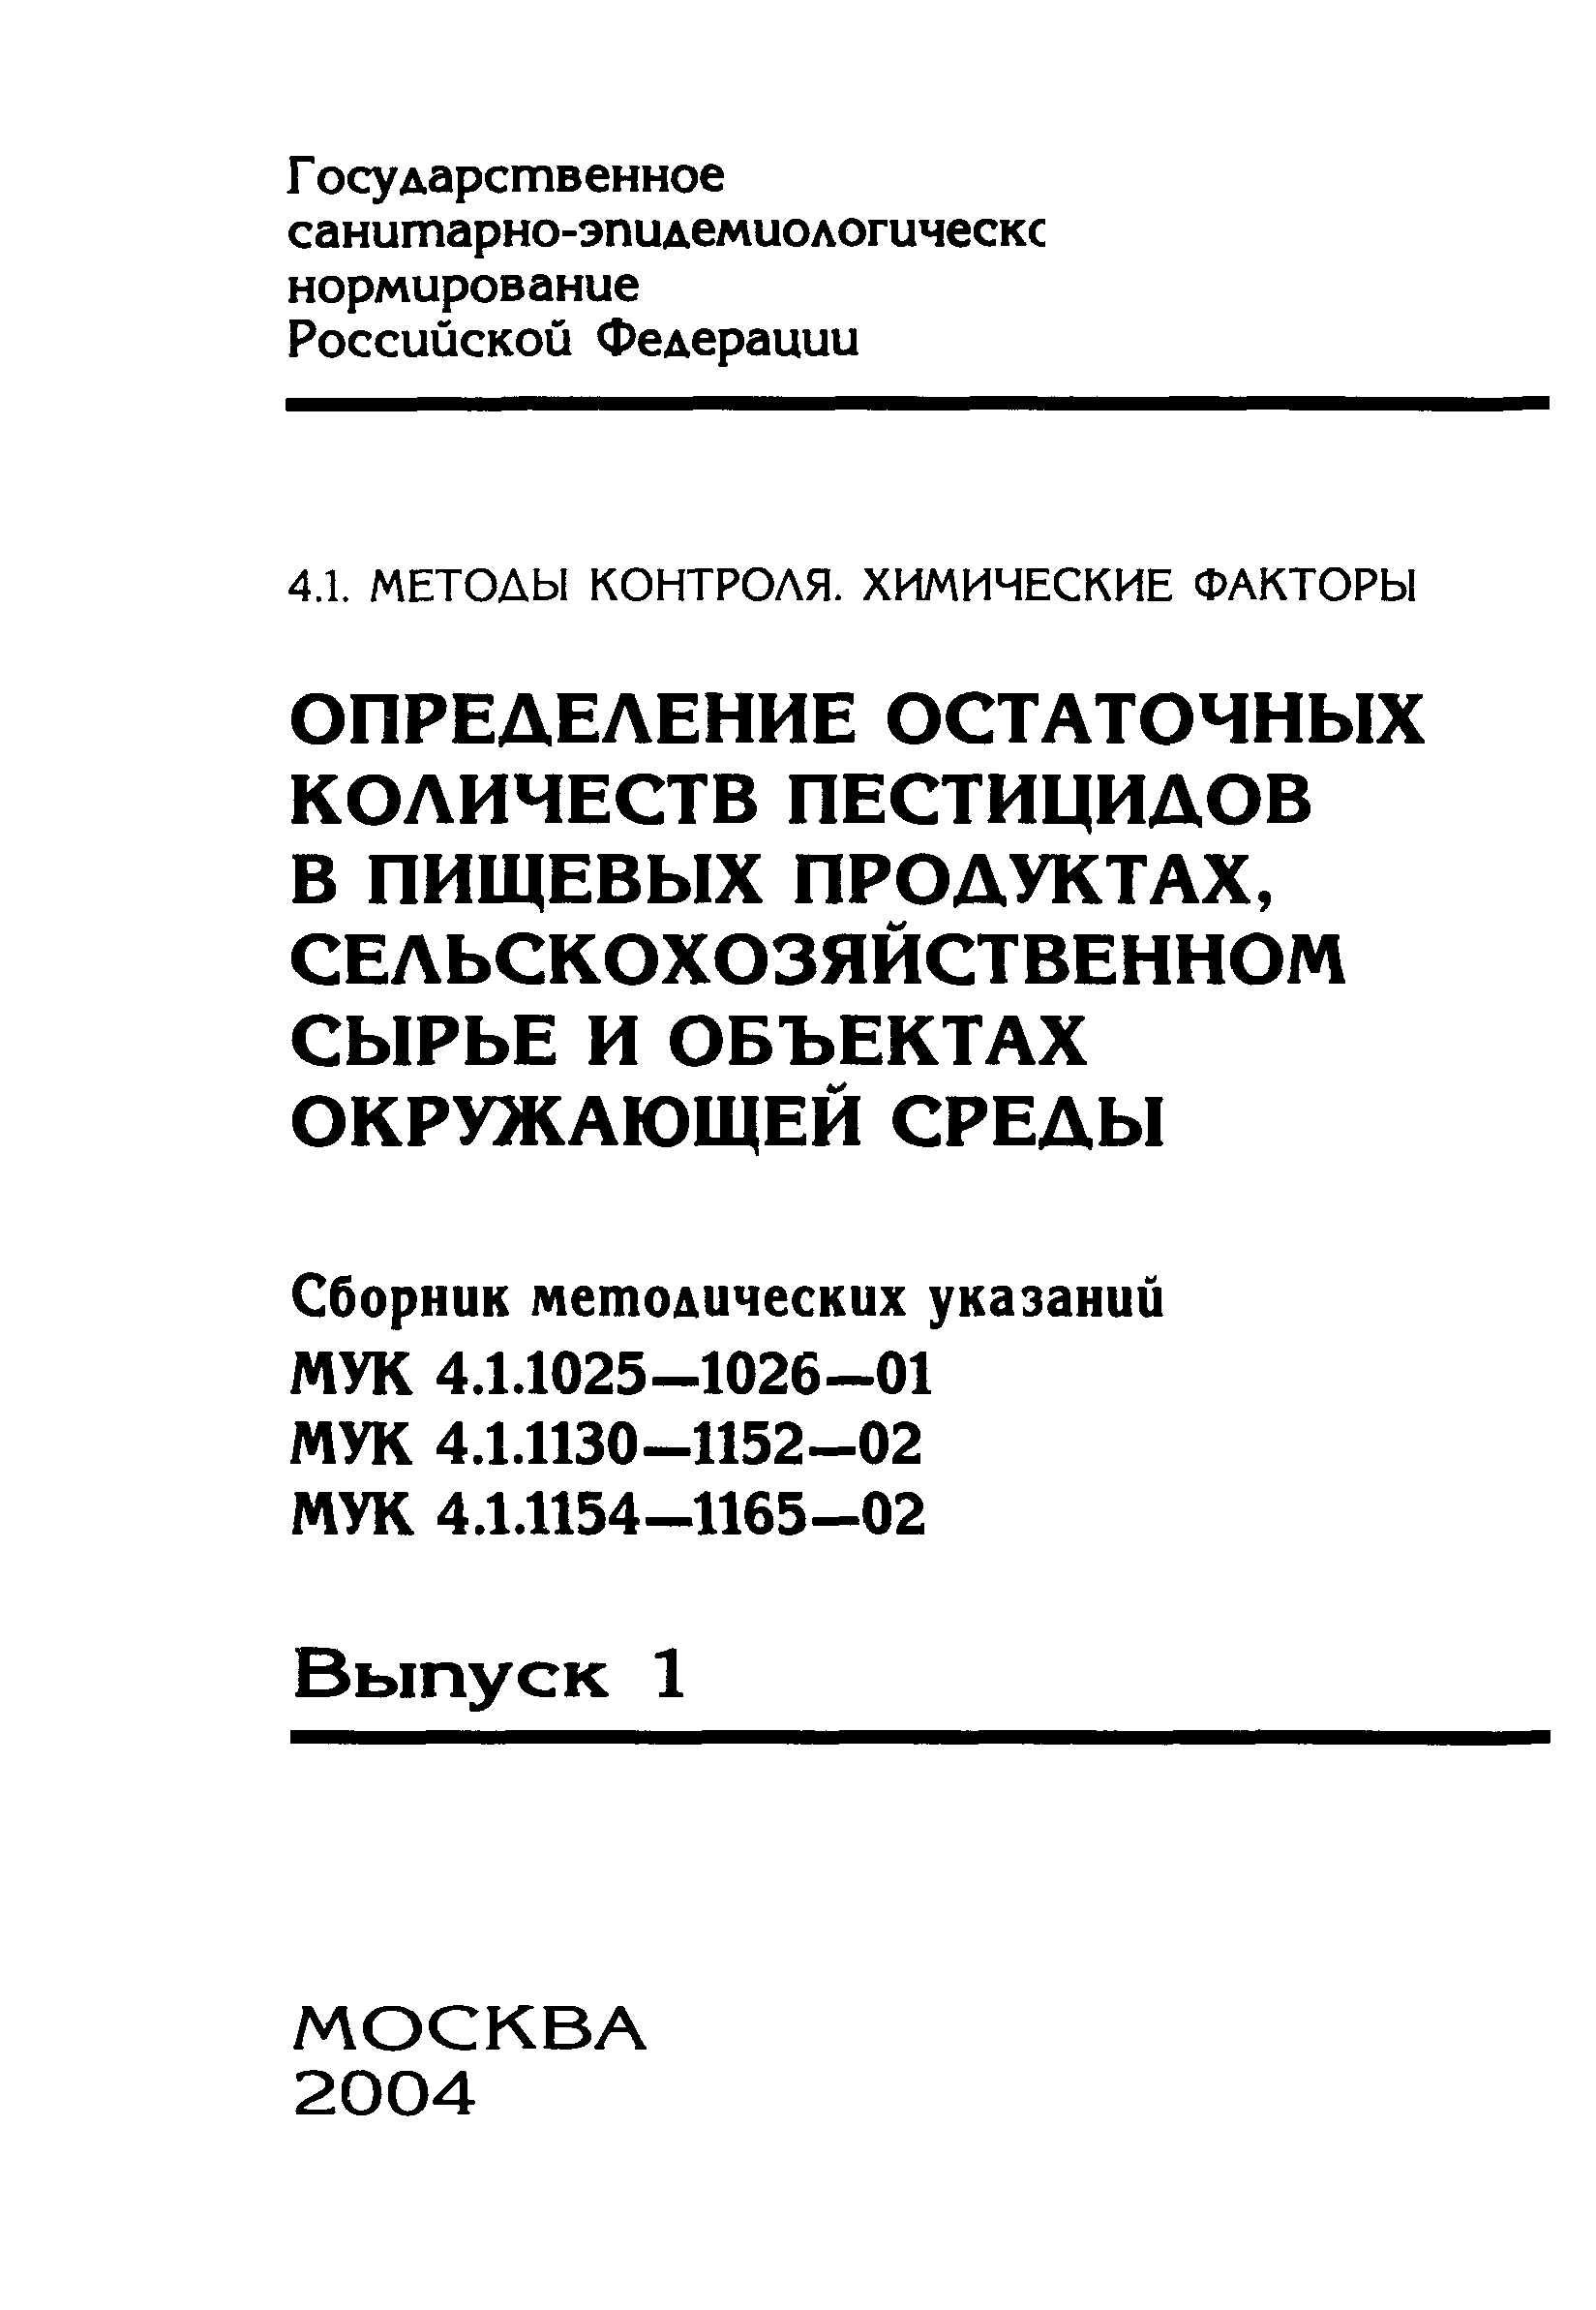 МУК 4.1.1165-02